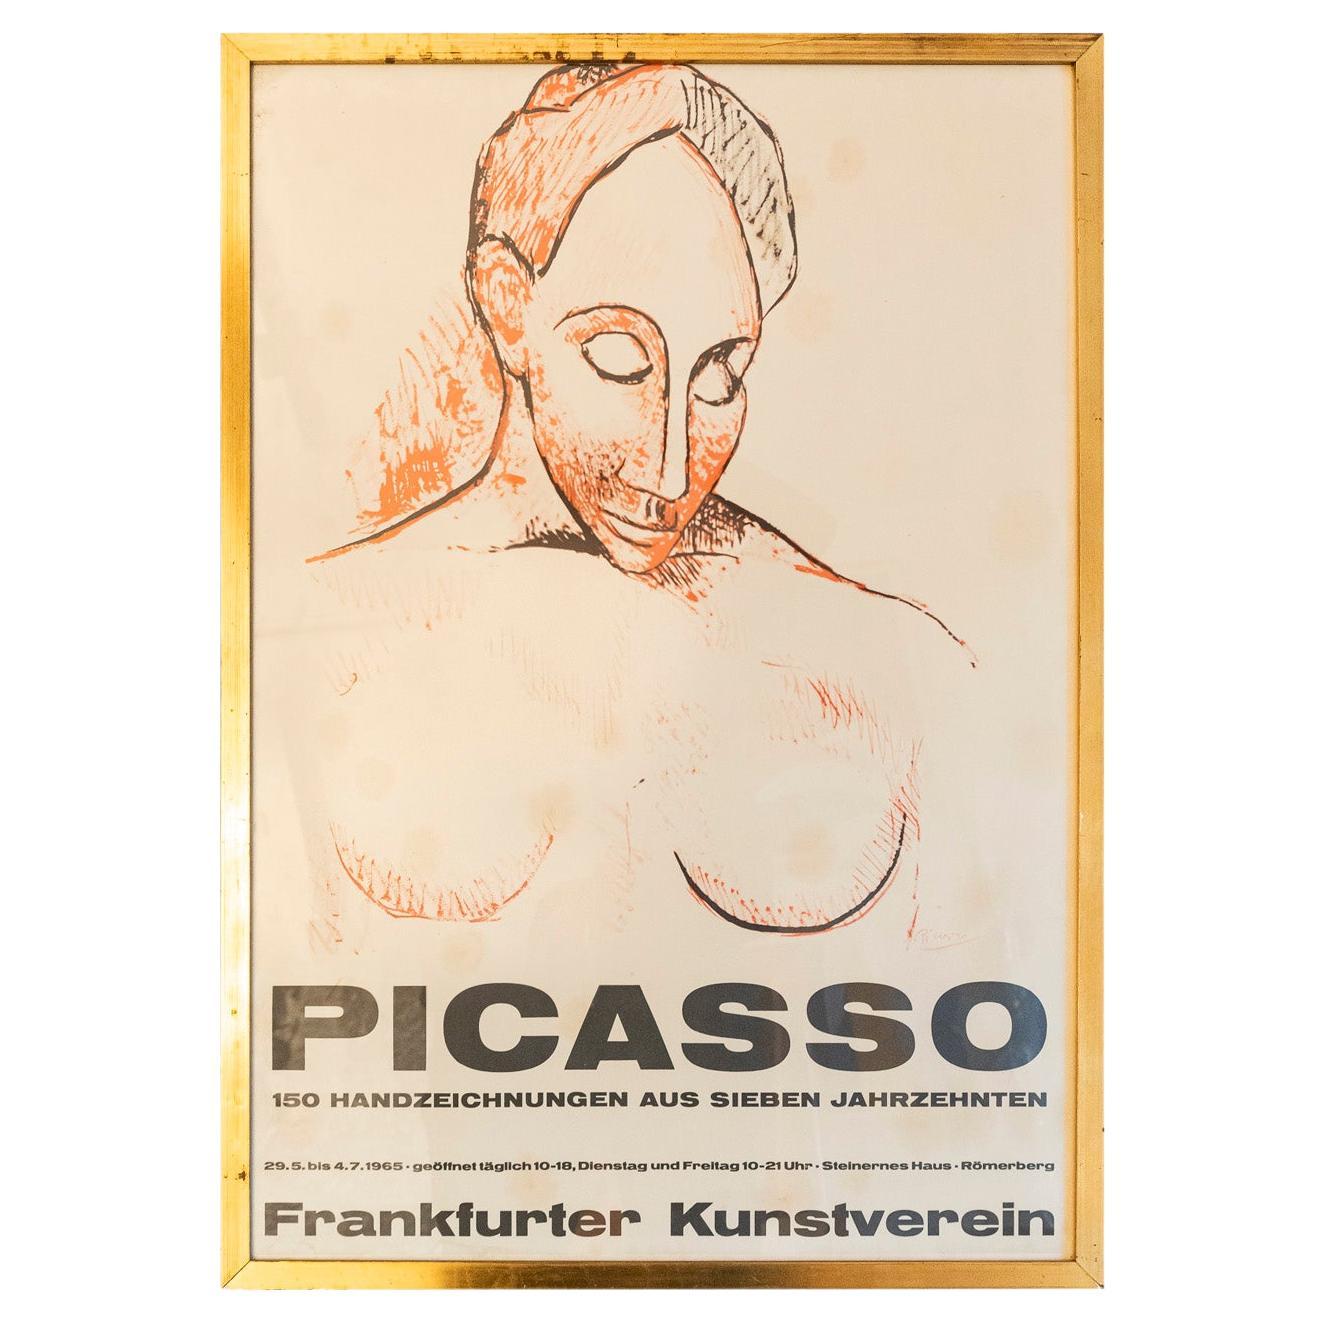 Originalausstellungsplakat von Picasso, Deutschland, 1965